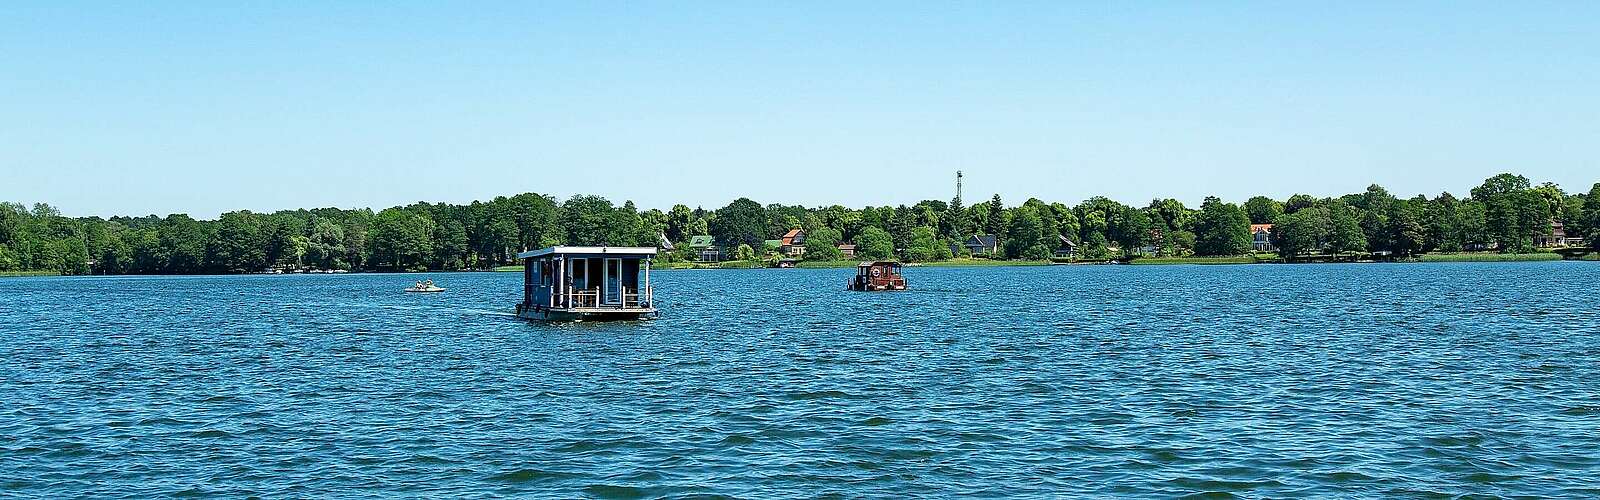 Hausboot auf dem Ruppiner See,
        
    

        Foto: Fotograf / Lizenz - Media Import/Steffen Lehmann